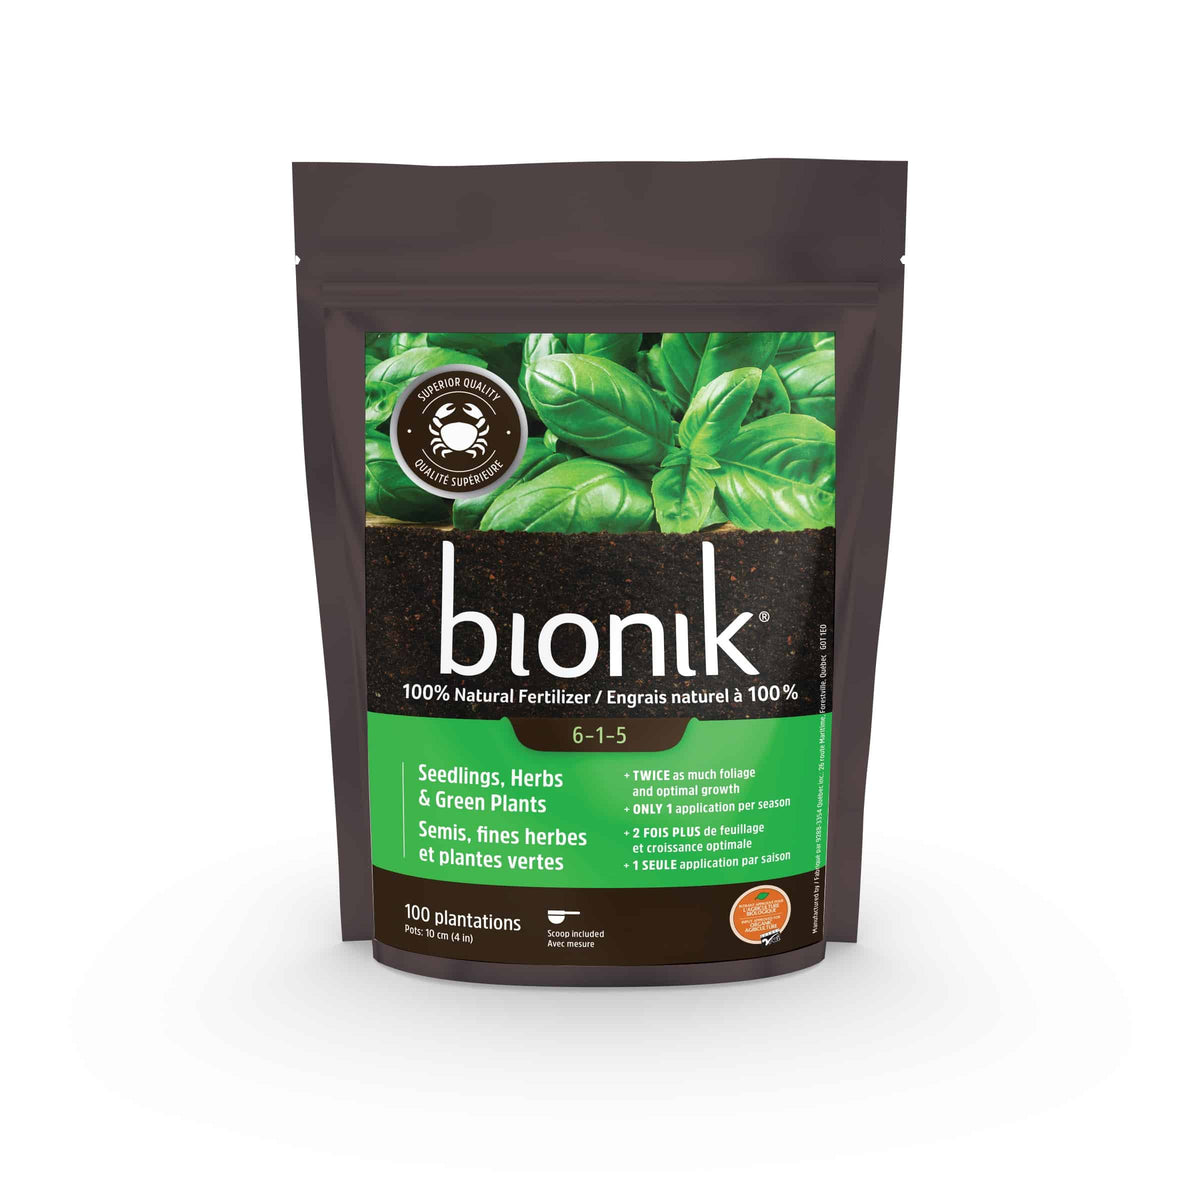 Bionik engrais Semis, fines herbes et plantes vertes 6-1-5